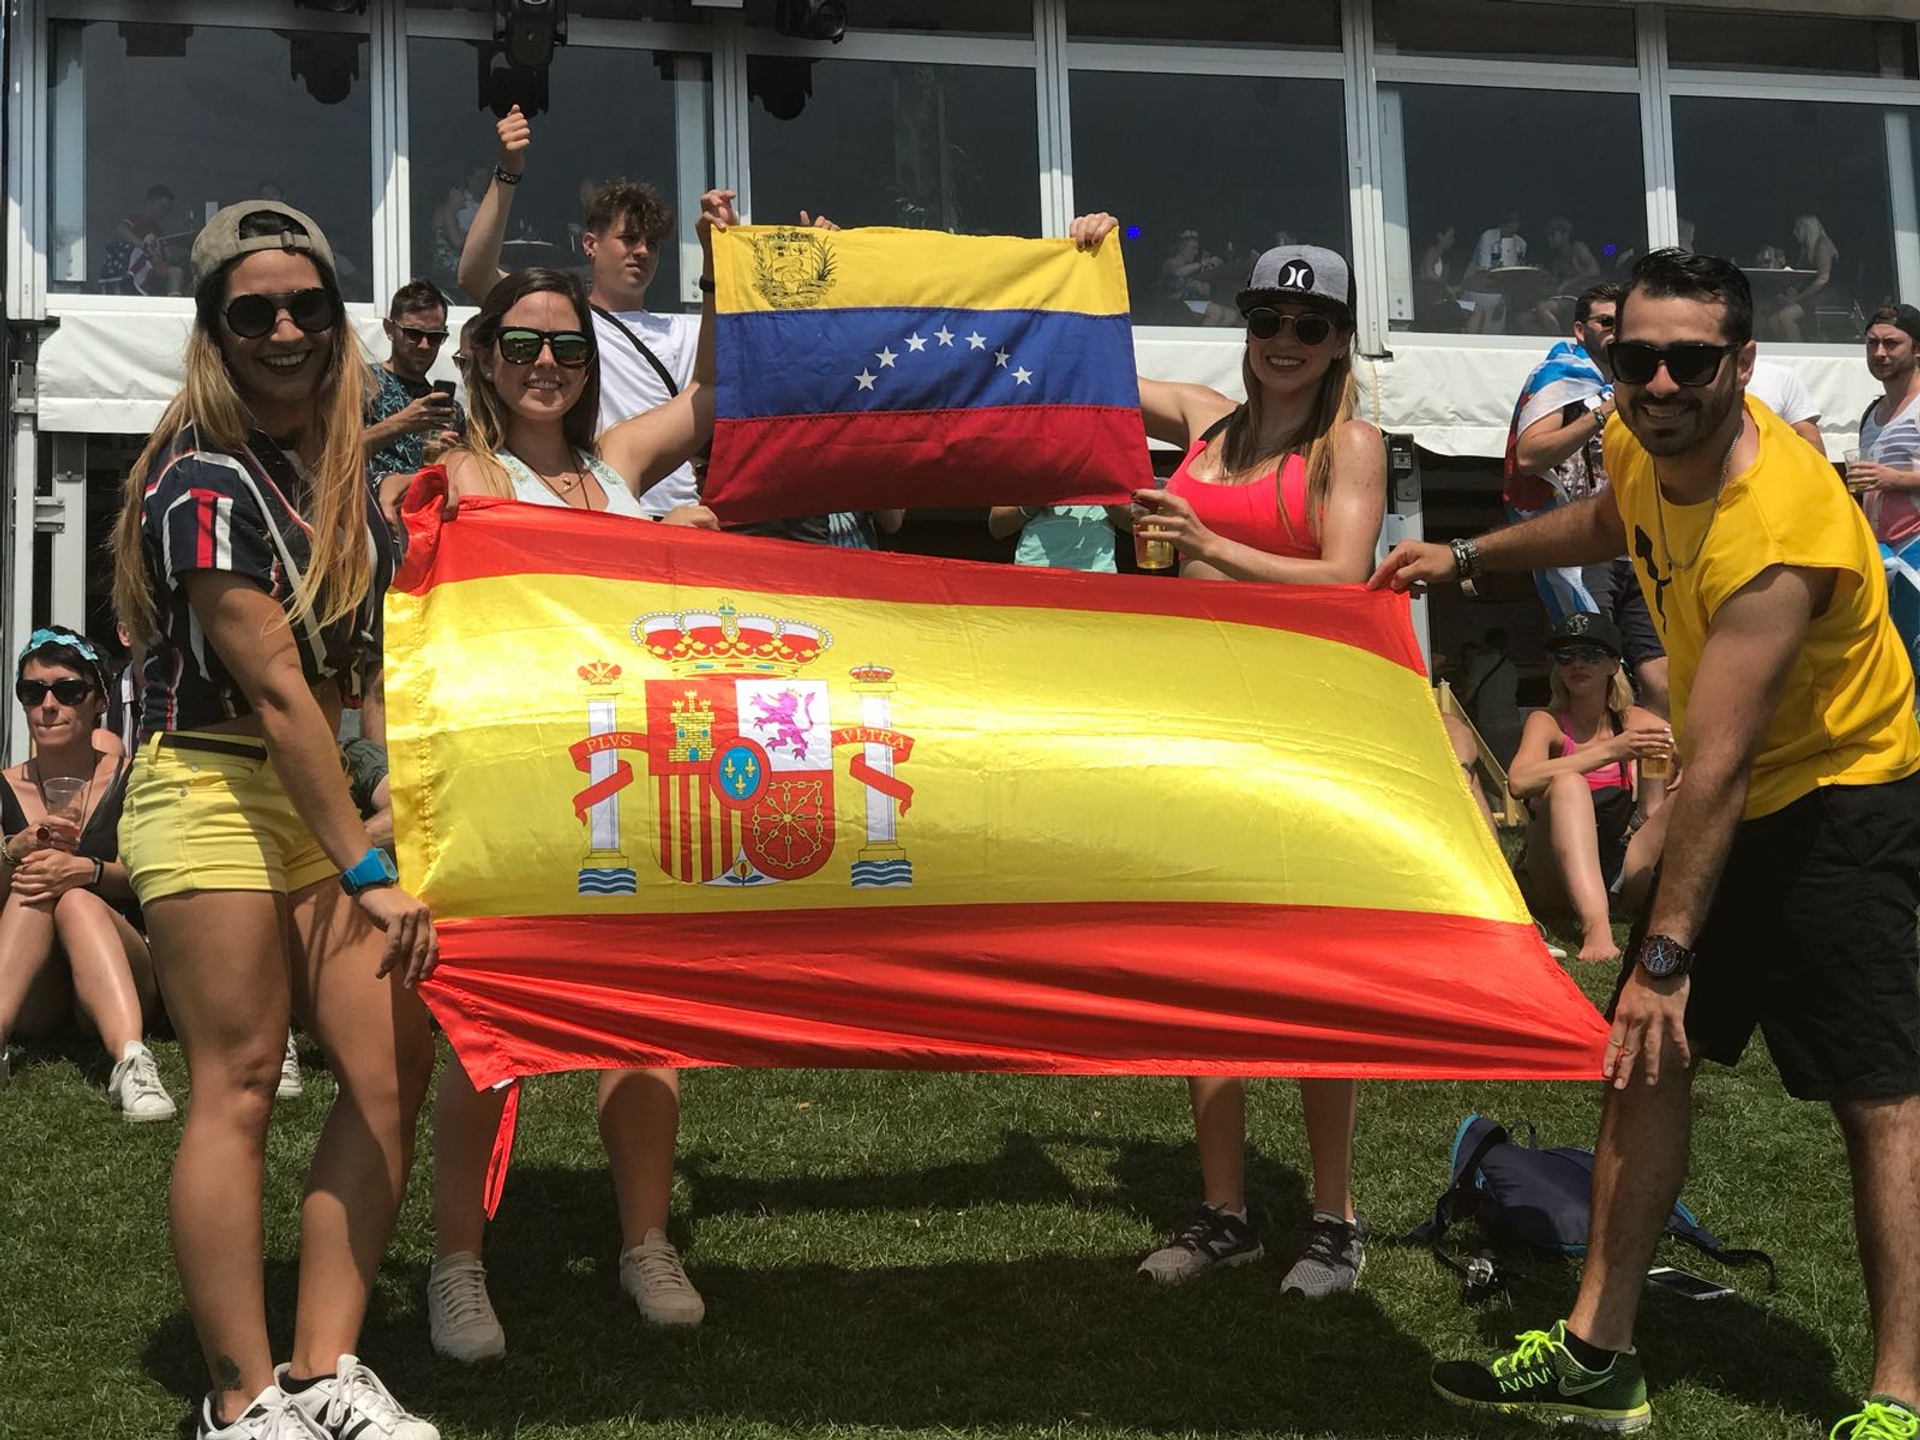 Spanje vlag